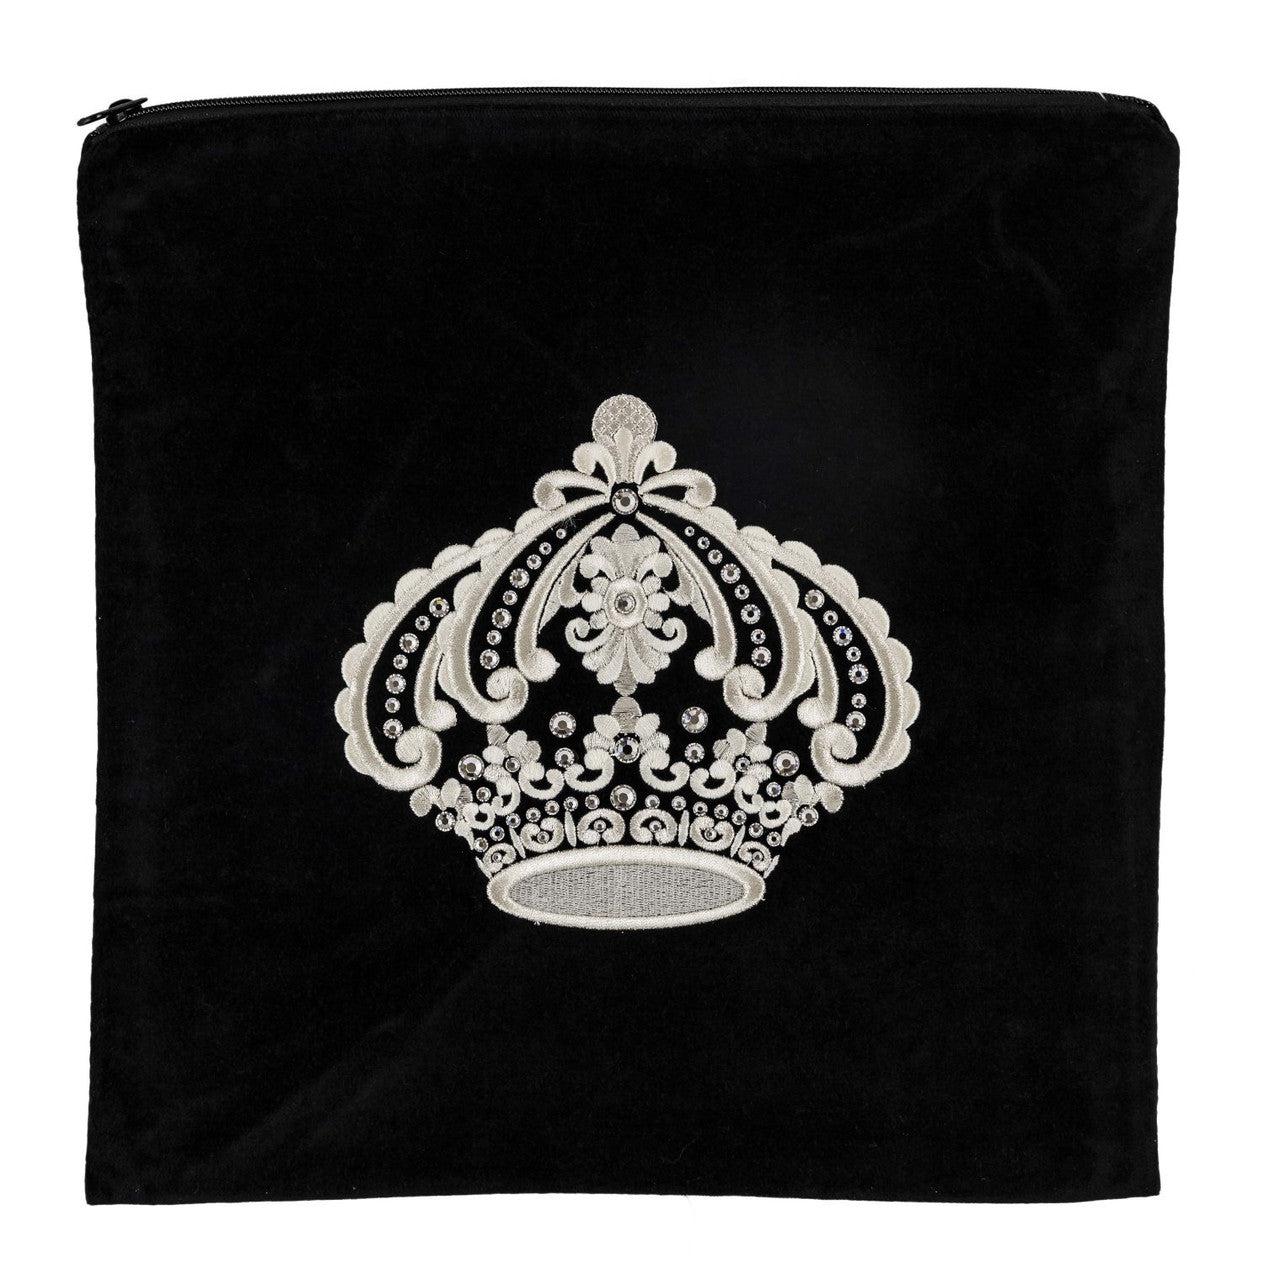 Regal Crown Velvet Bag #181